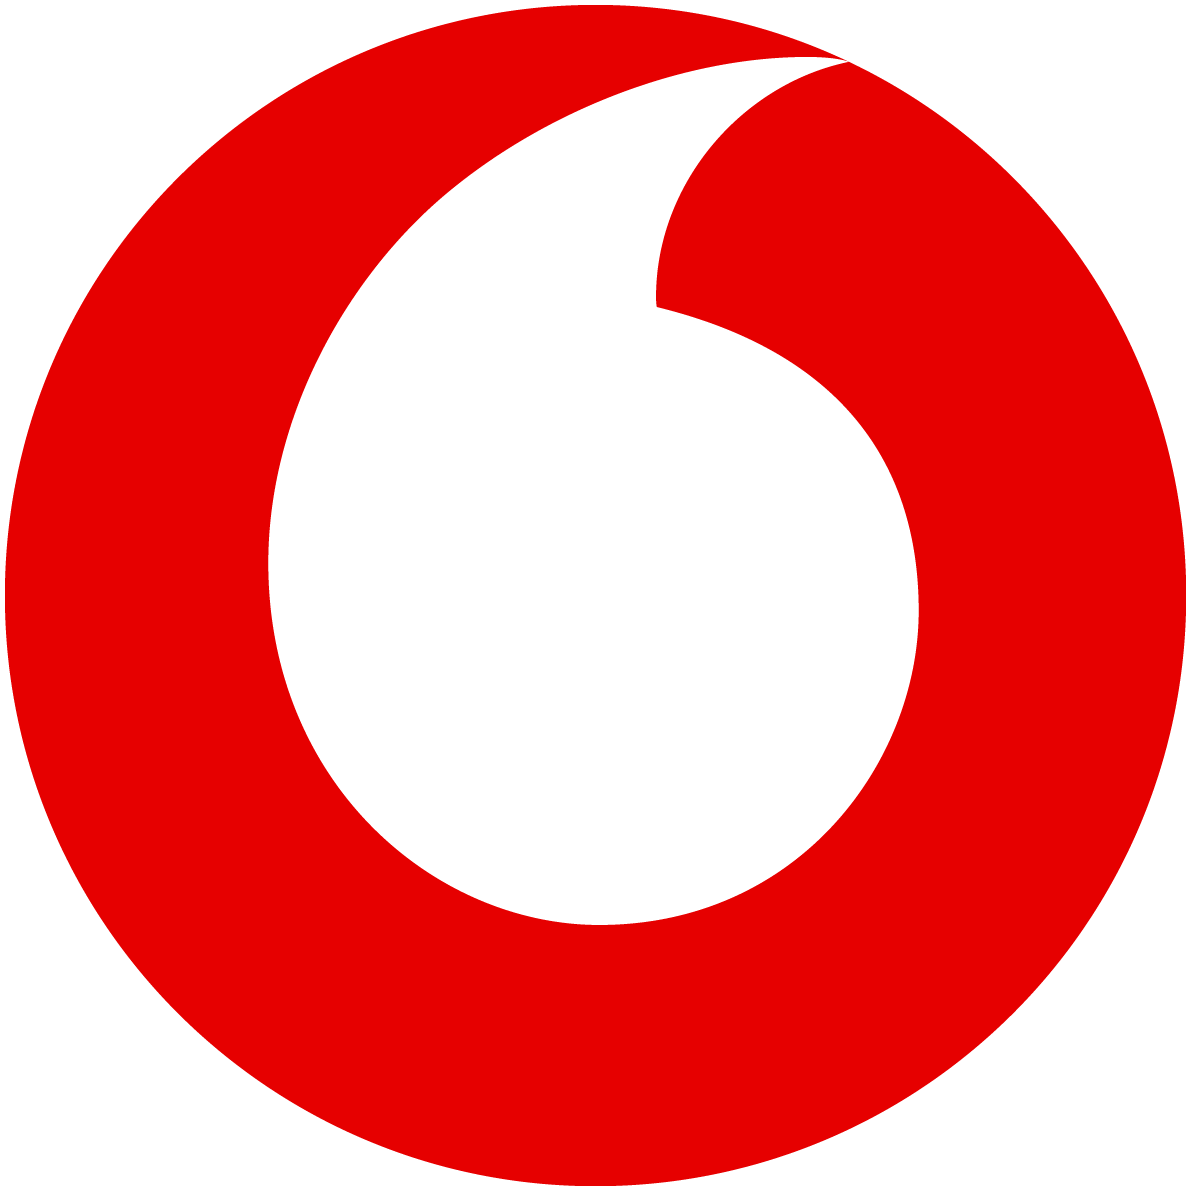 Vodafone Gk 4.0 connector